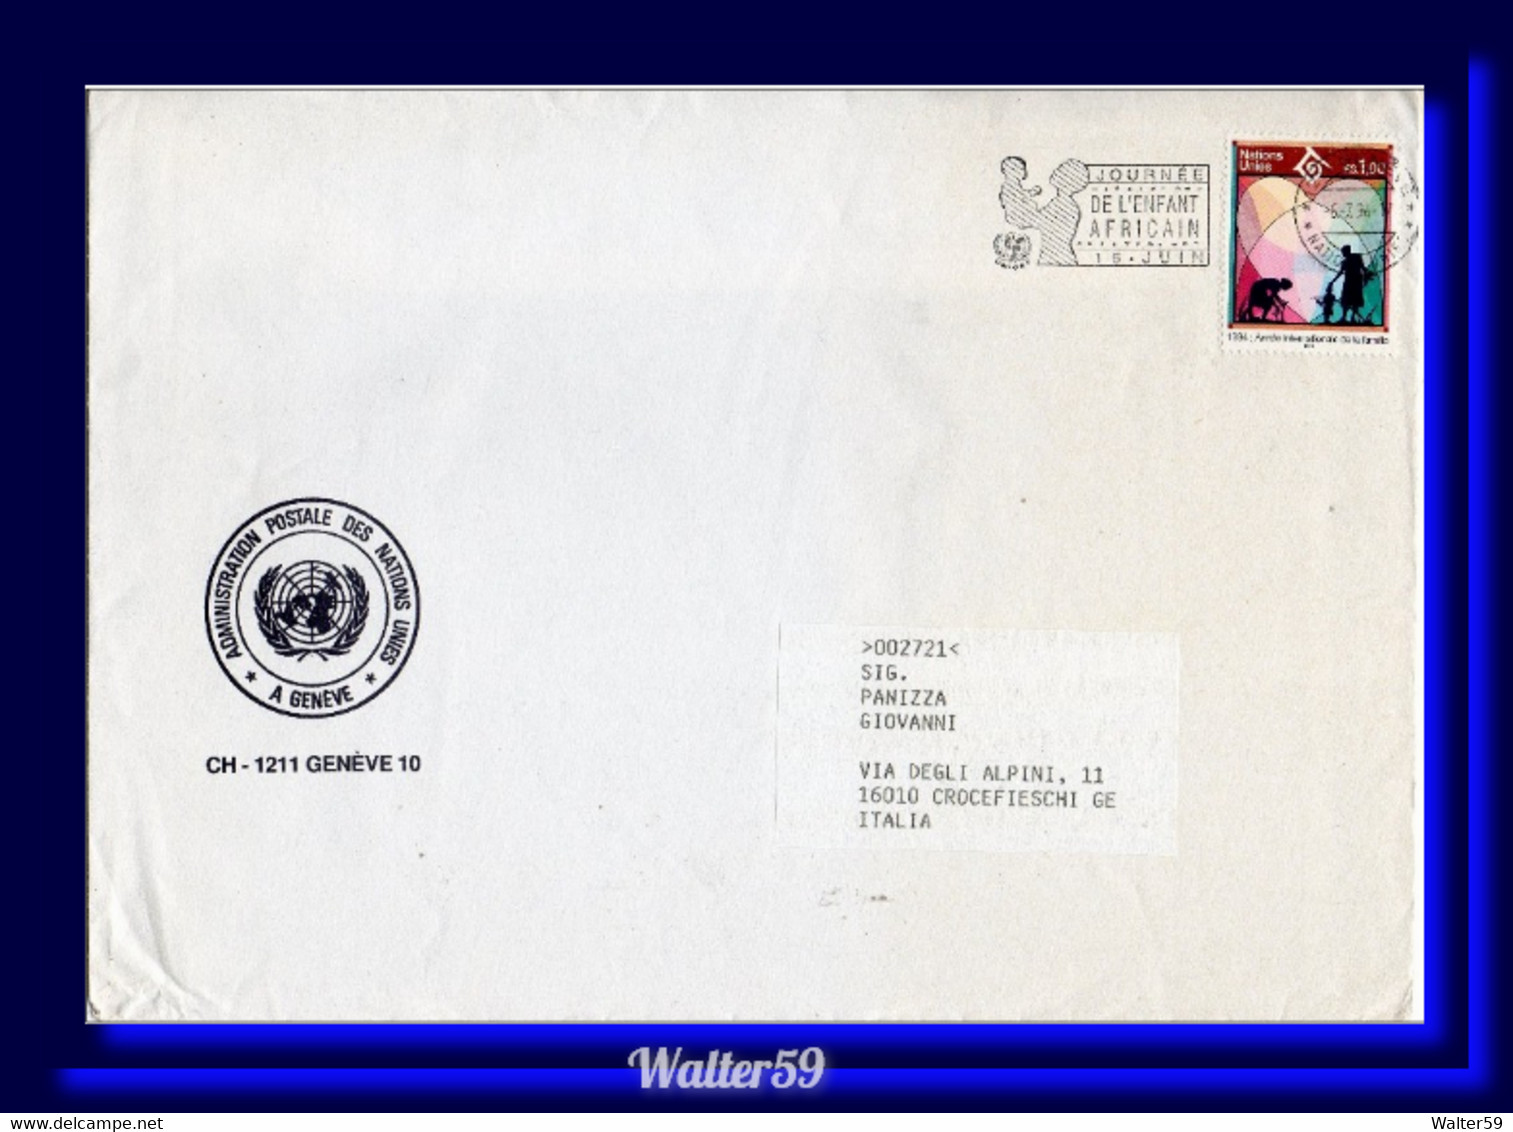 1994 United Nations NU ONU Bureau De Geneve Lettre Voyagee Pour L'Italie - Lettres & Documents